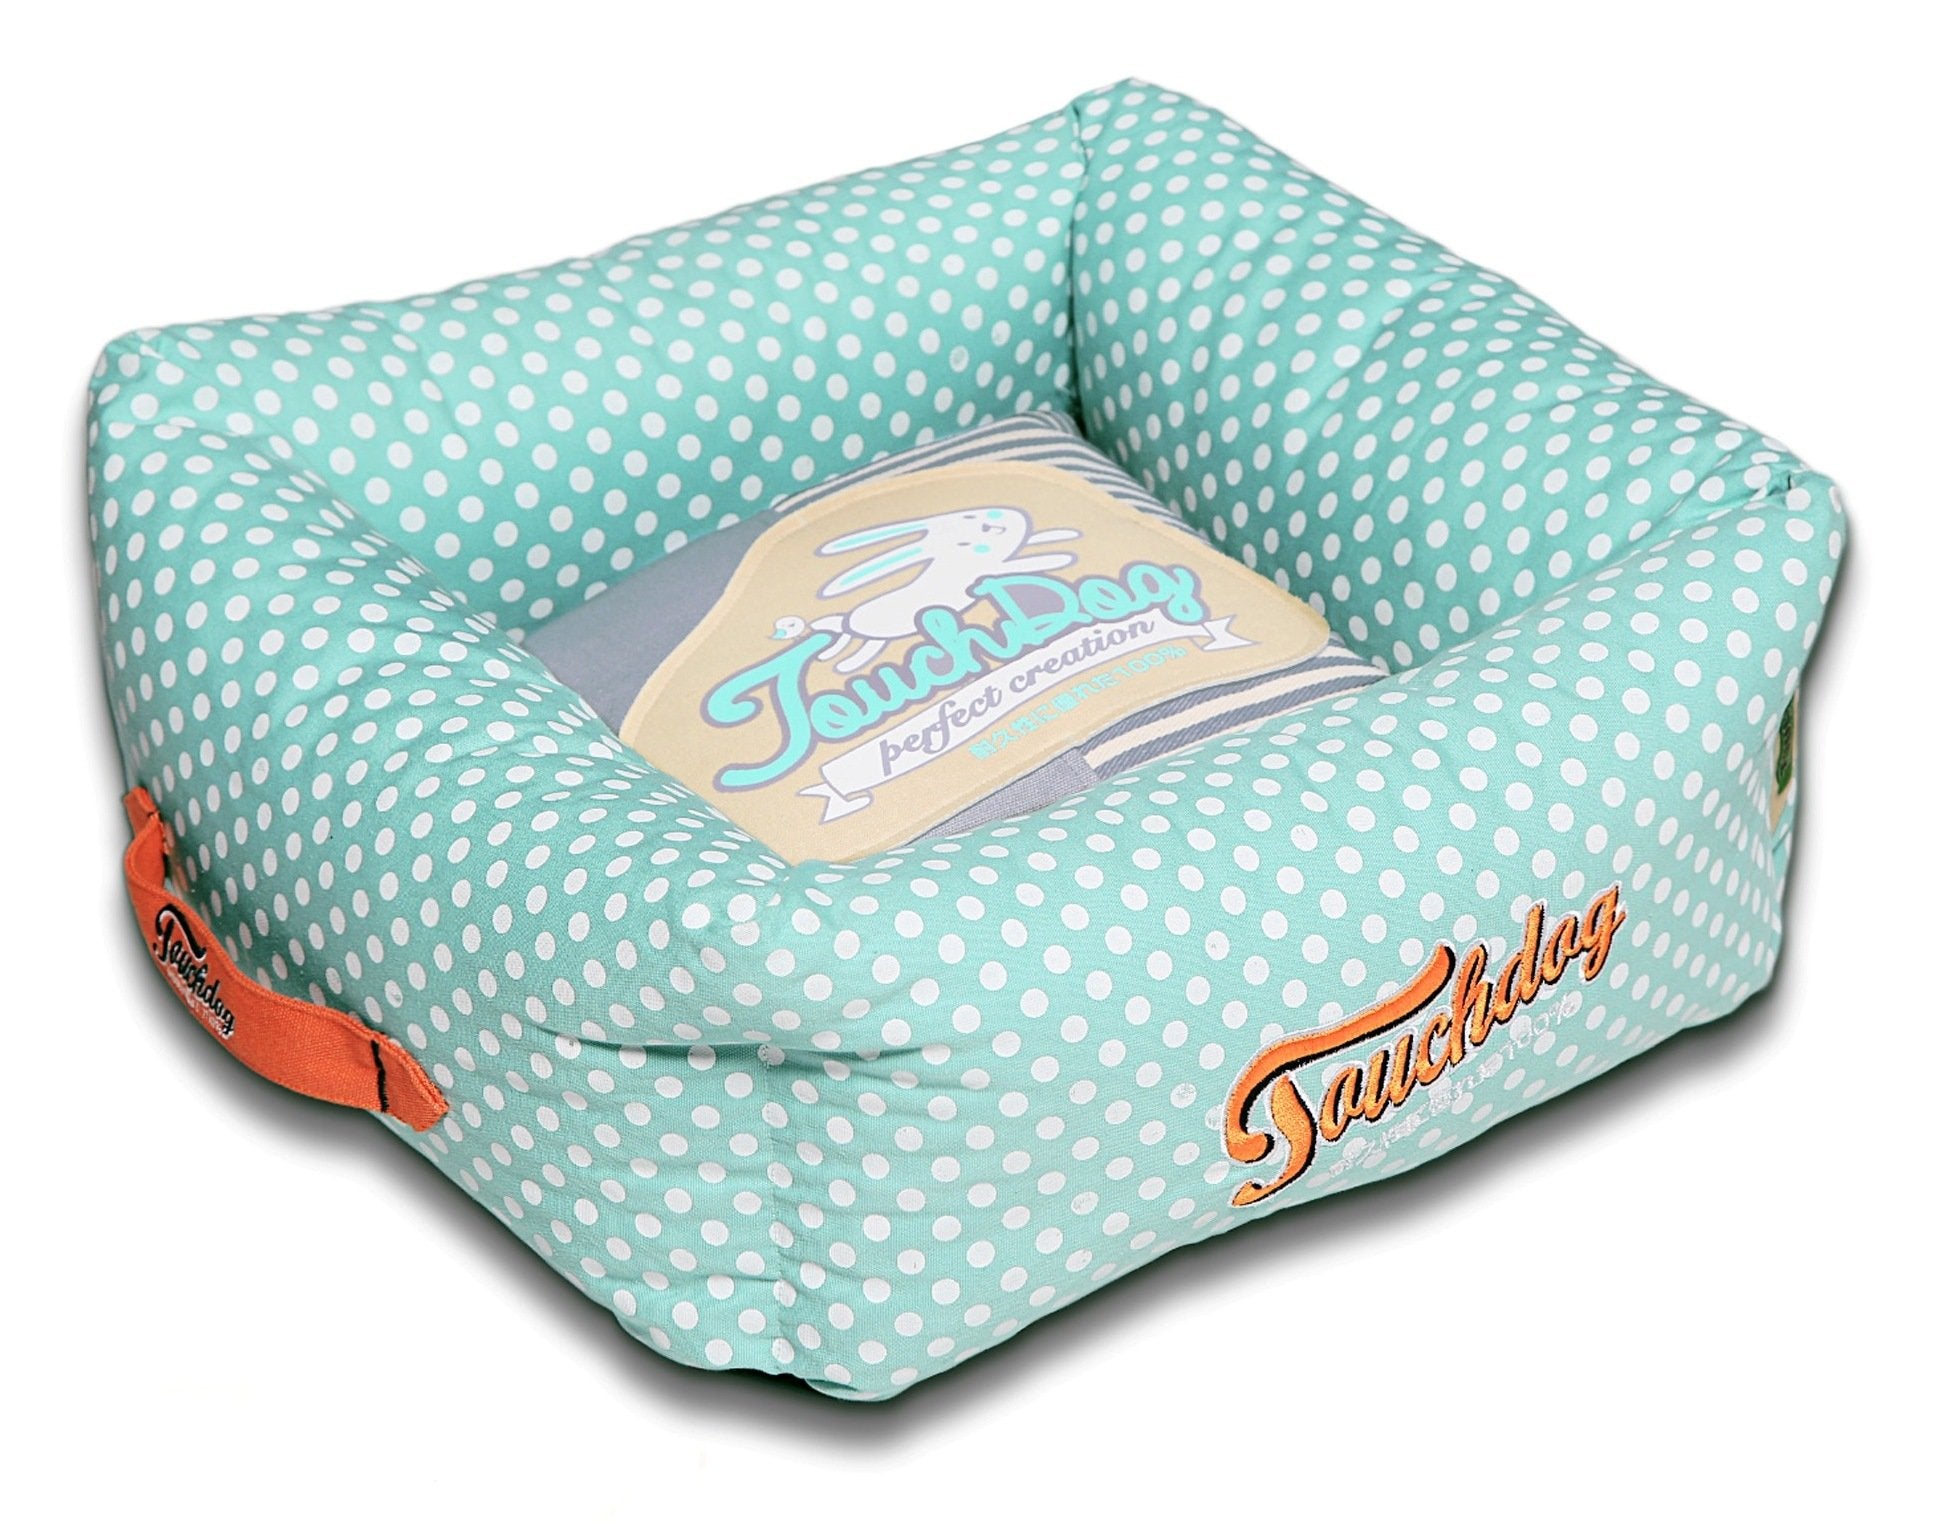 Touchdog® Polka-Striped Polo Easy-Wash Dog Bed - Orange/Lavender - Large